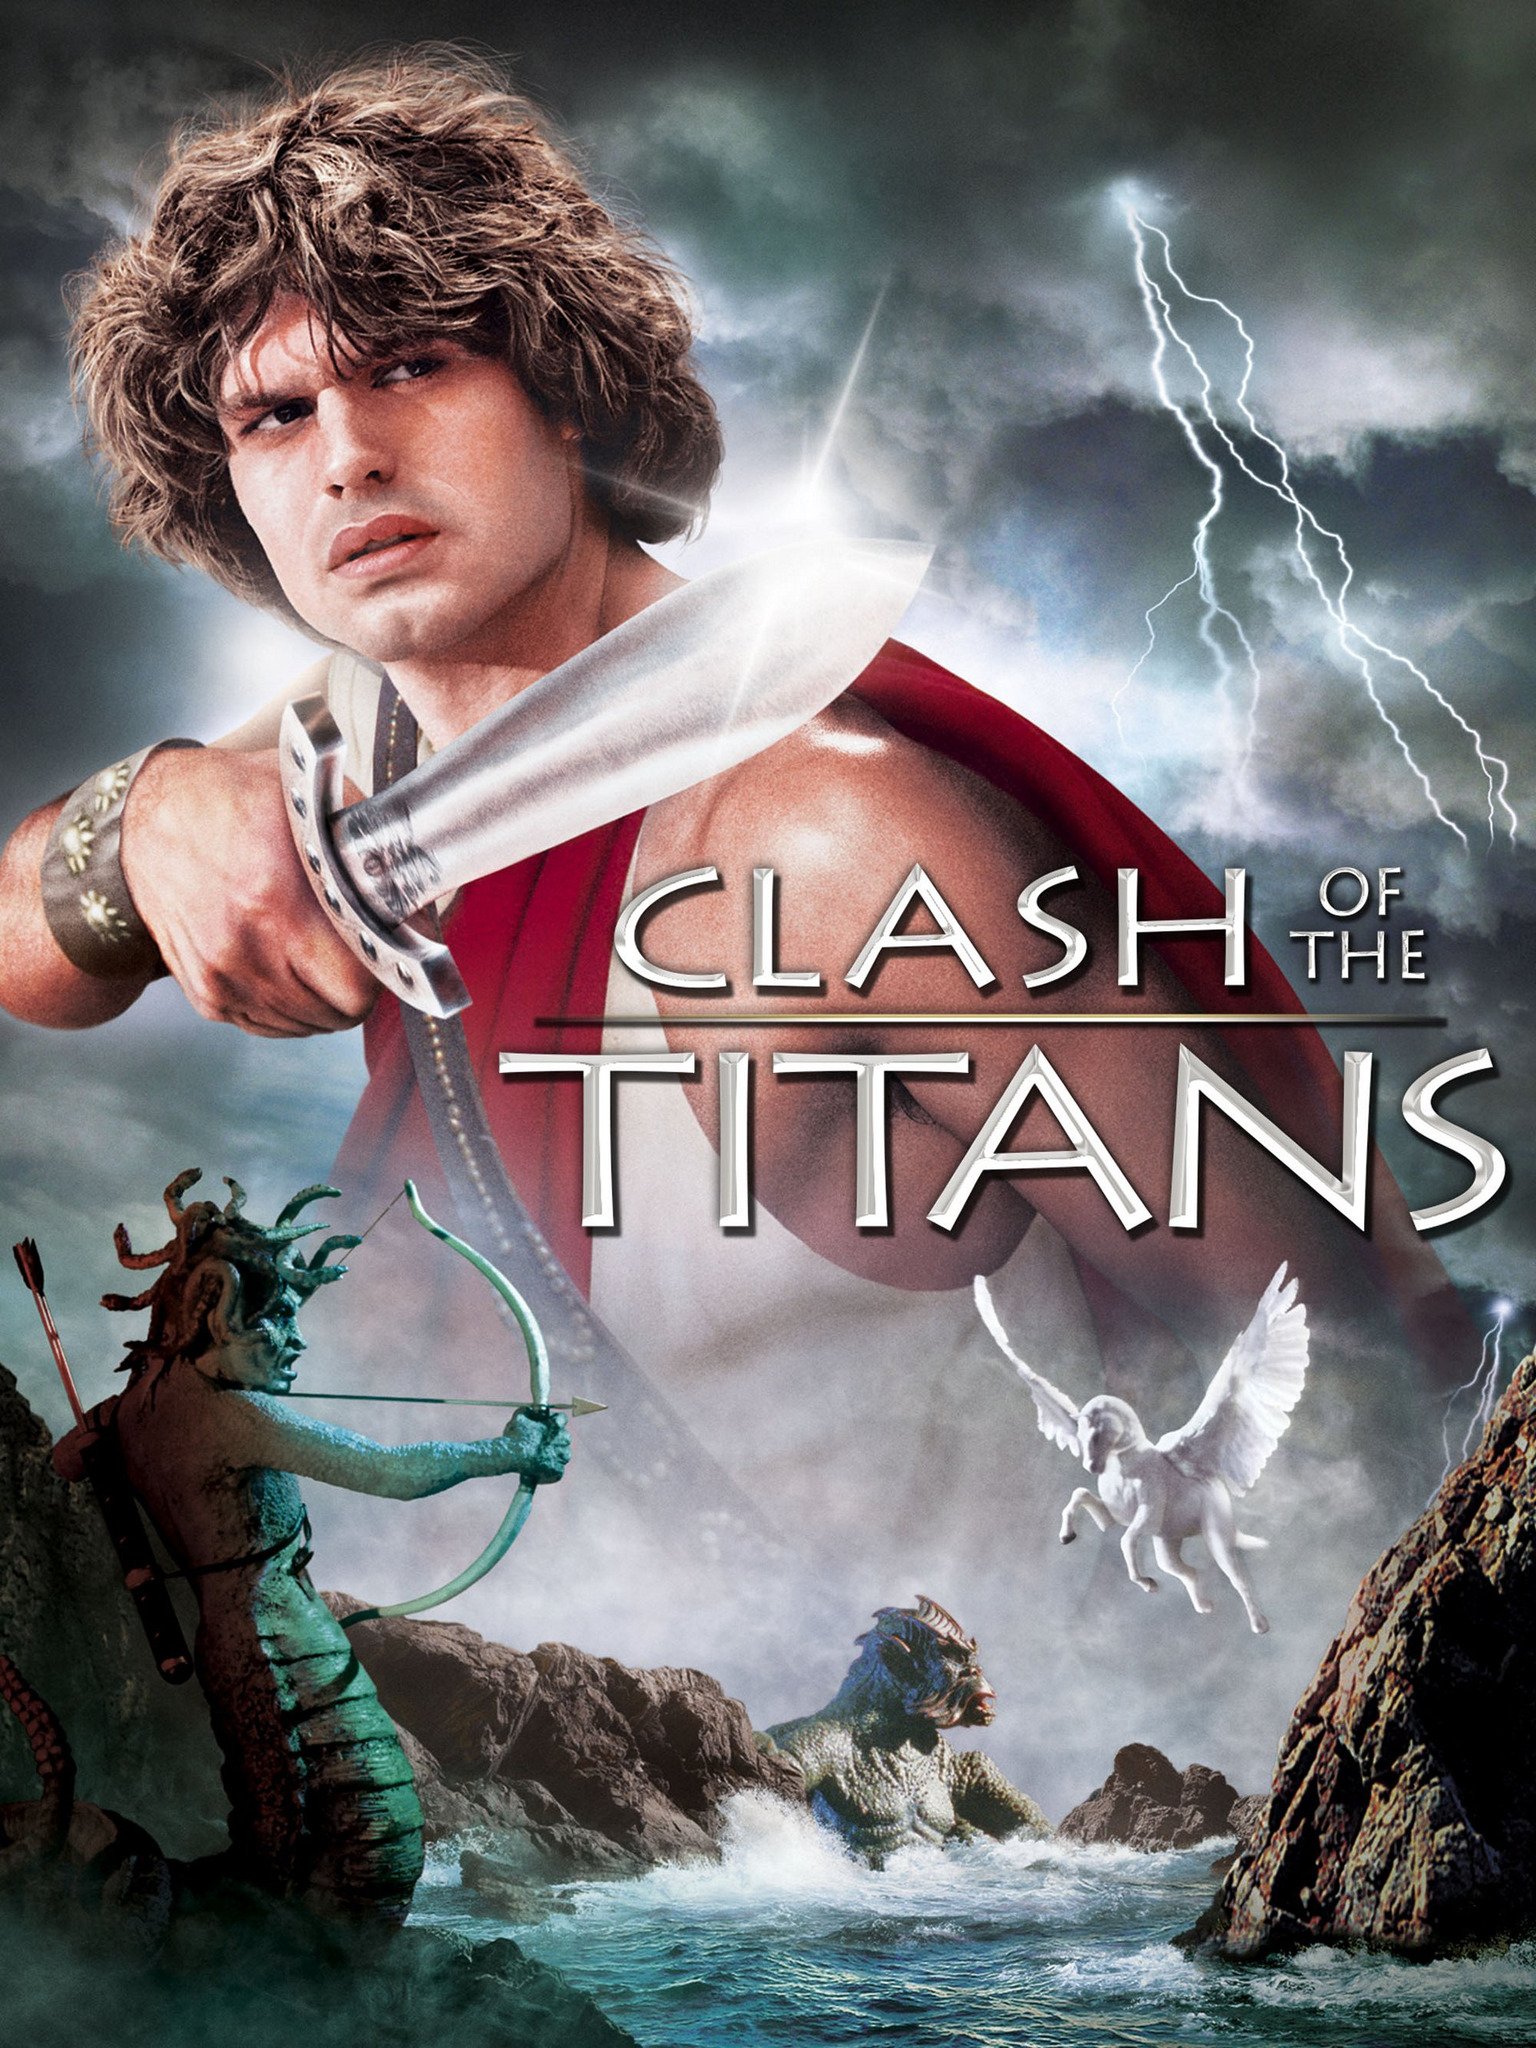 the clash of titans trailer